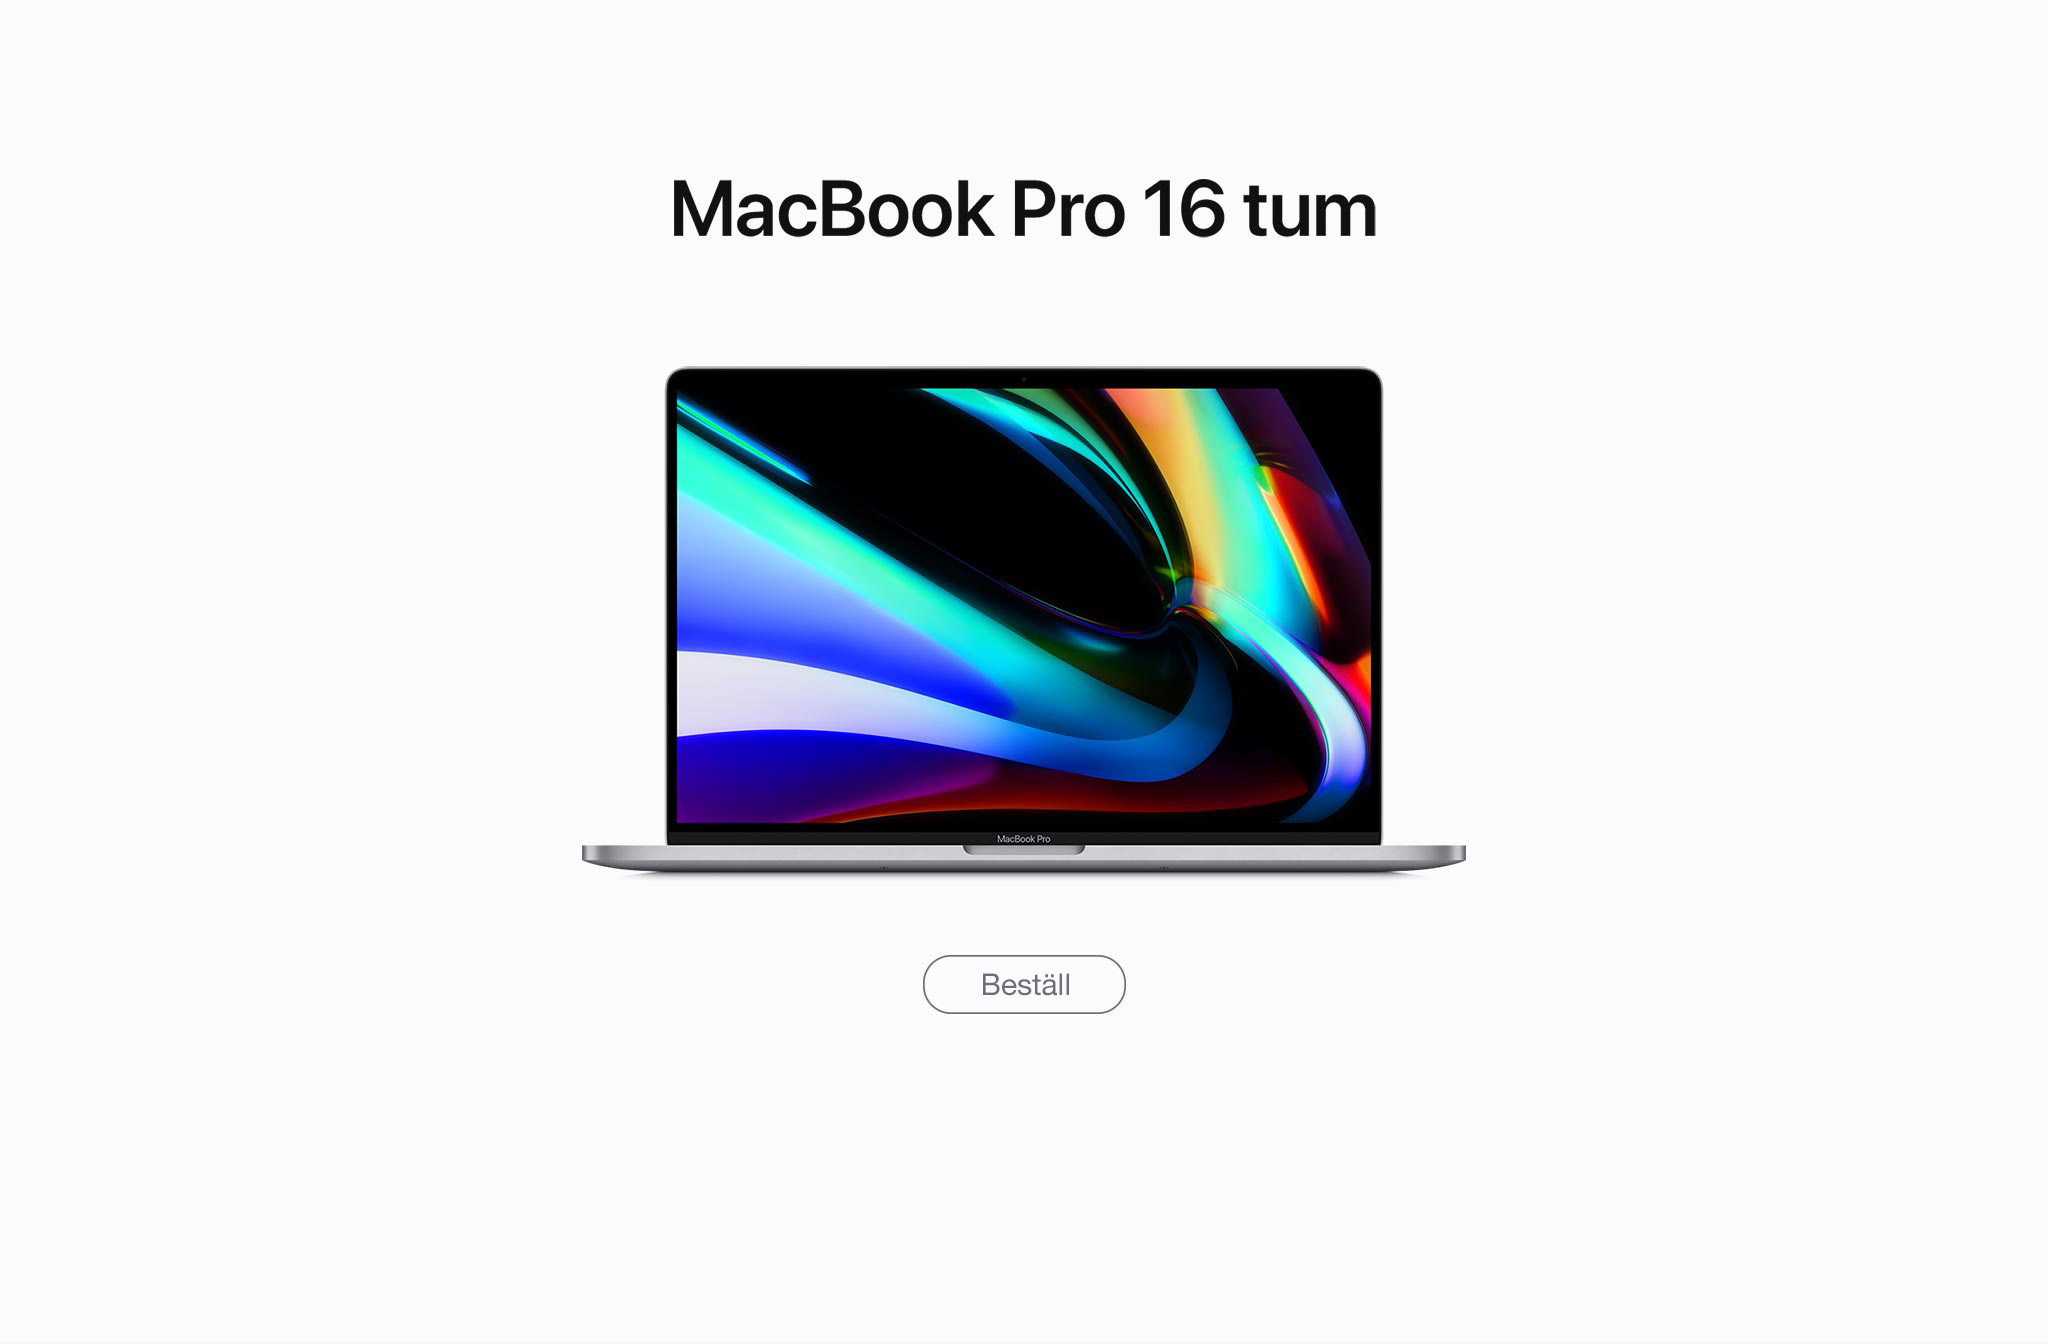 MacBook Pro 16 tum